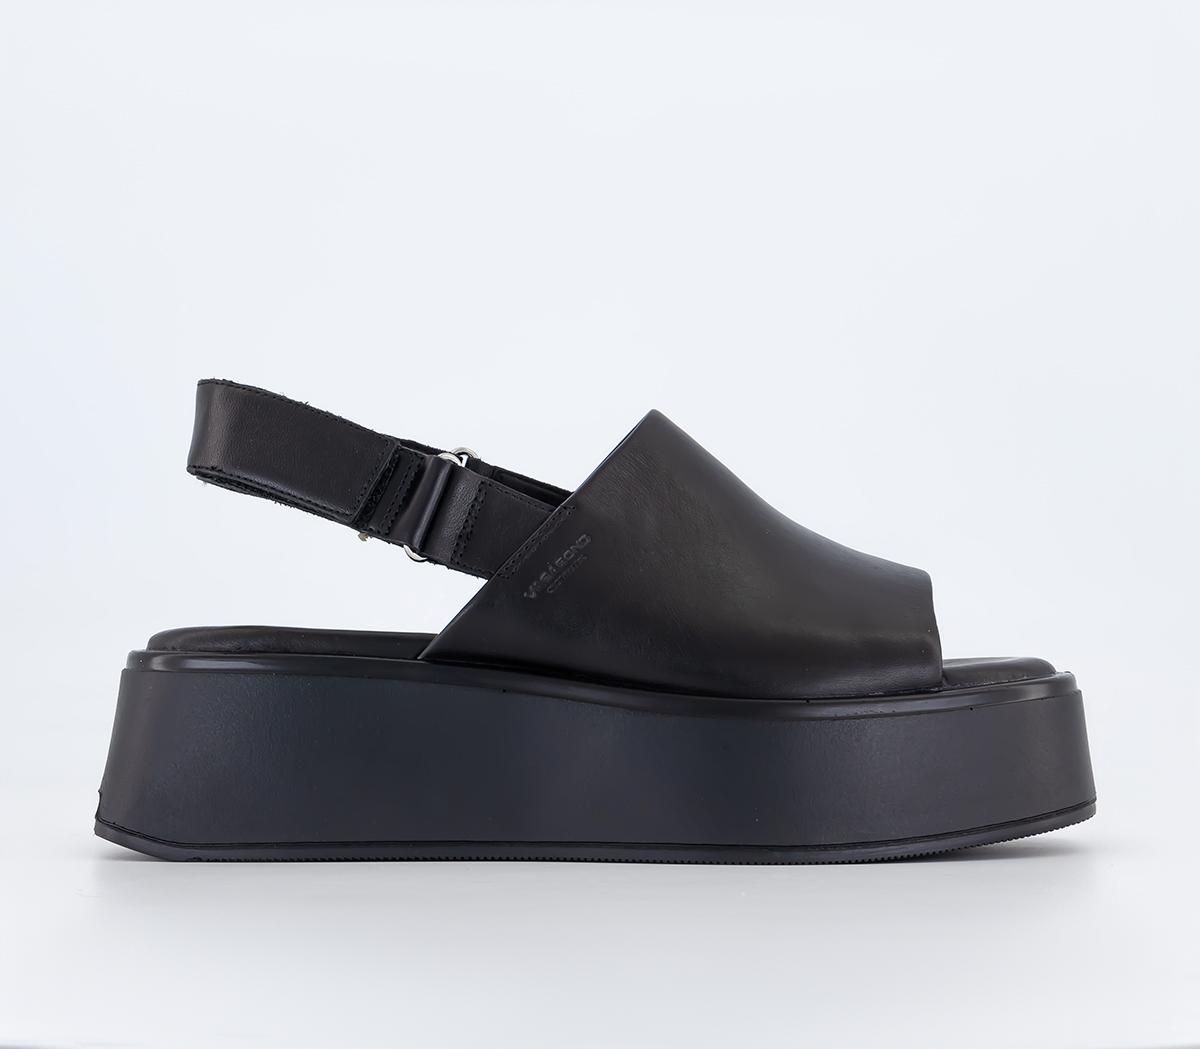 Vagabond ShoemakersCourntey Sling Back Sandals Black Leather